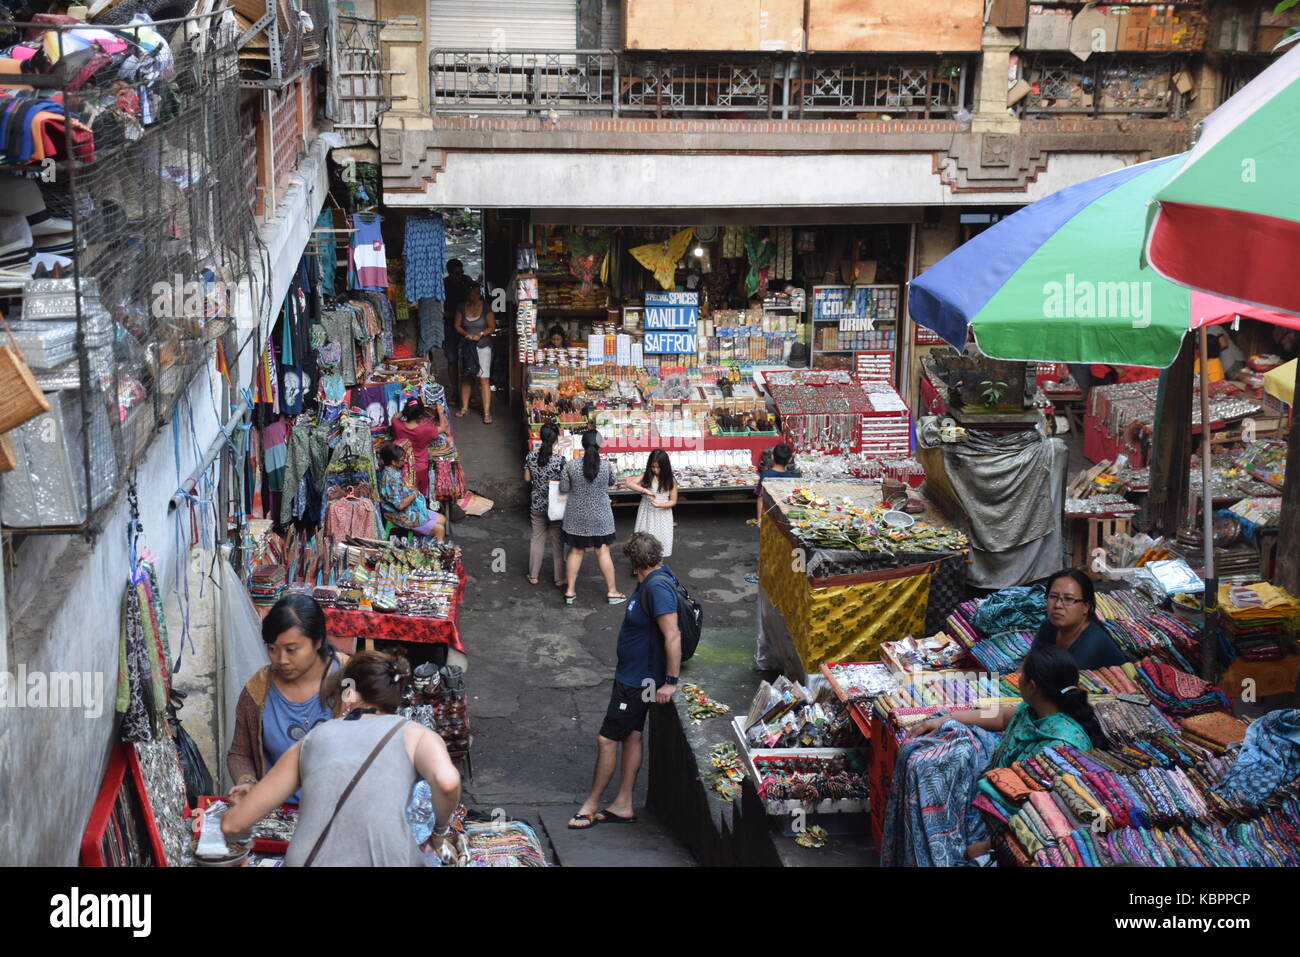 Der gedrängten Straße Markt in Ubud, Bali - Indonesien Stockfoto